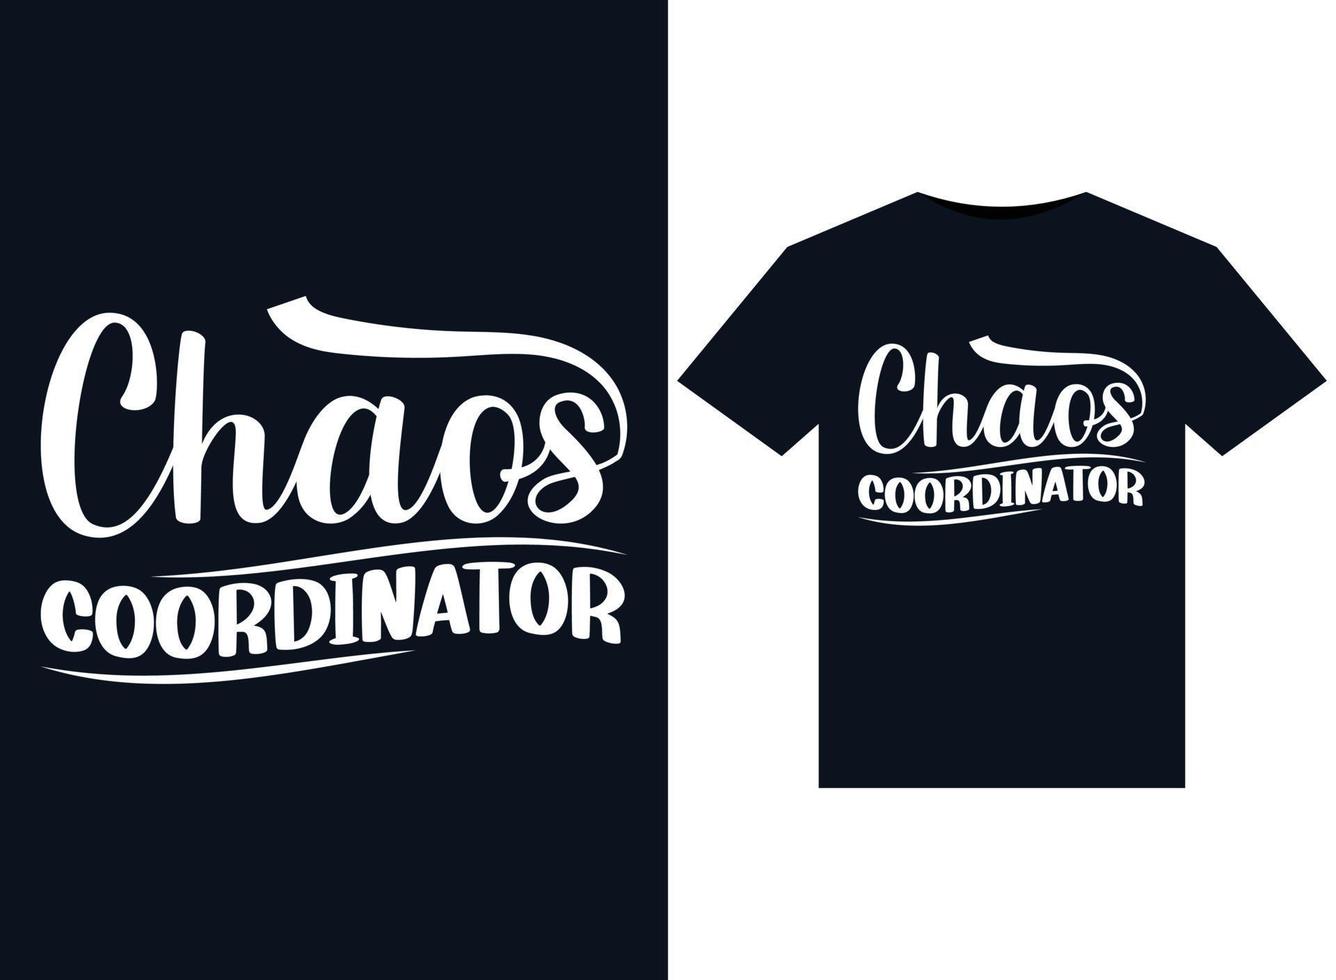 ilustraciones del coordinador del caos para el diseño de camisetas listas para imprimir vector